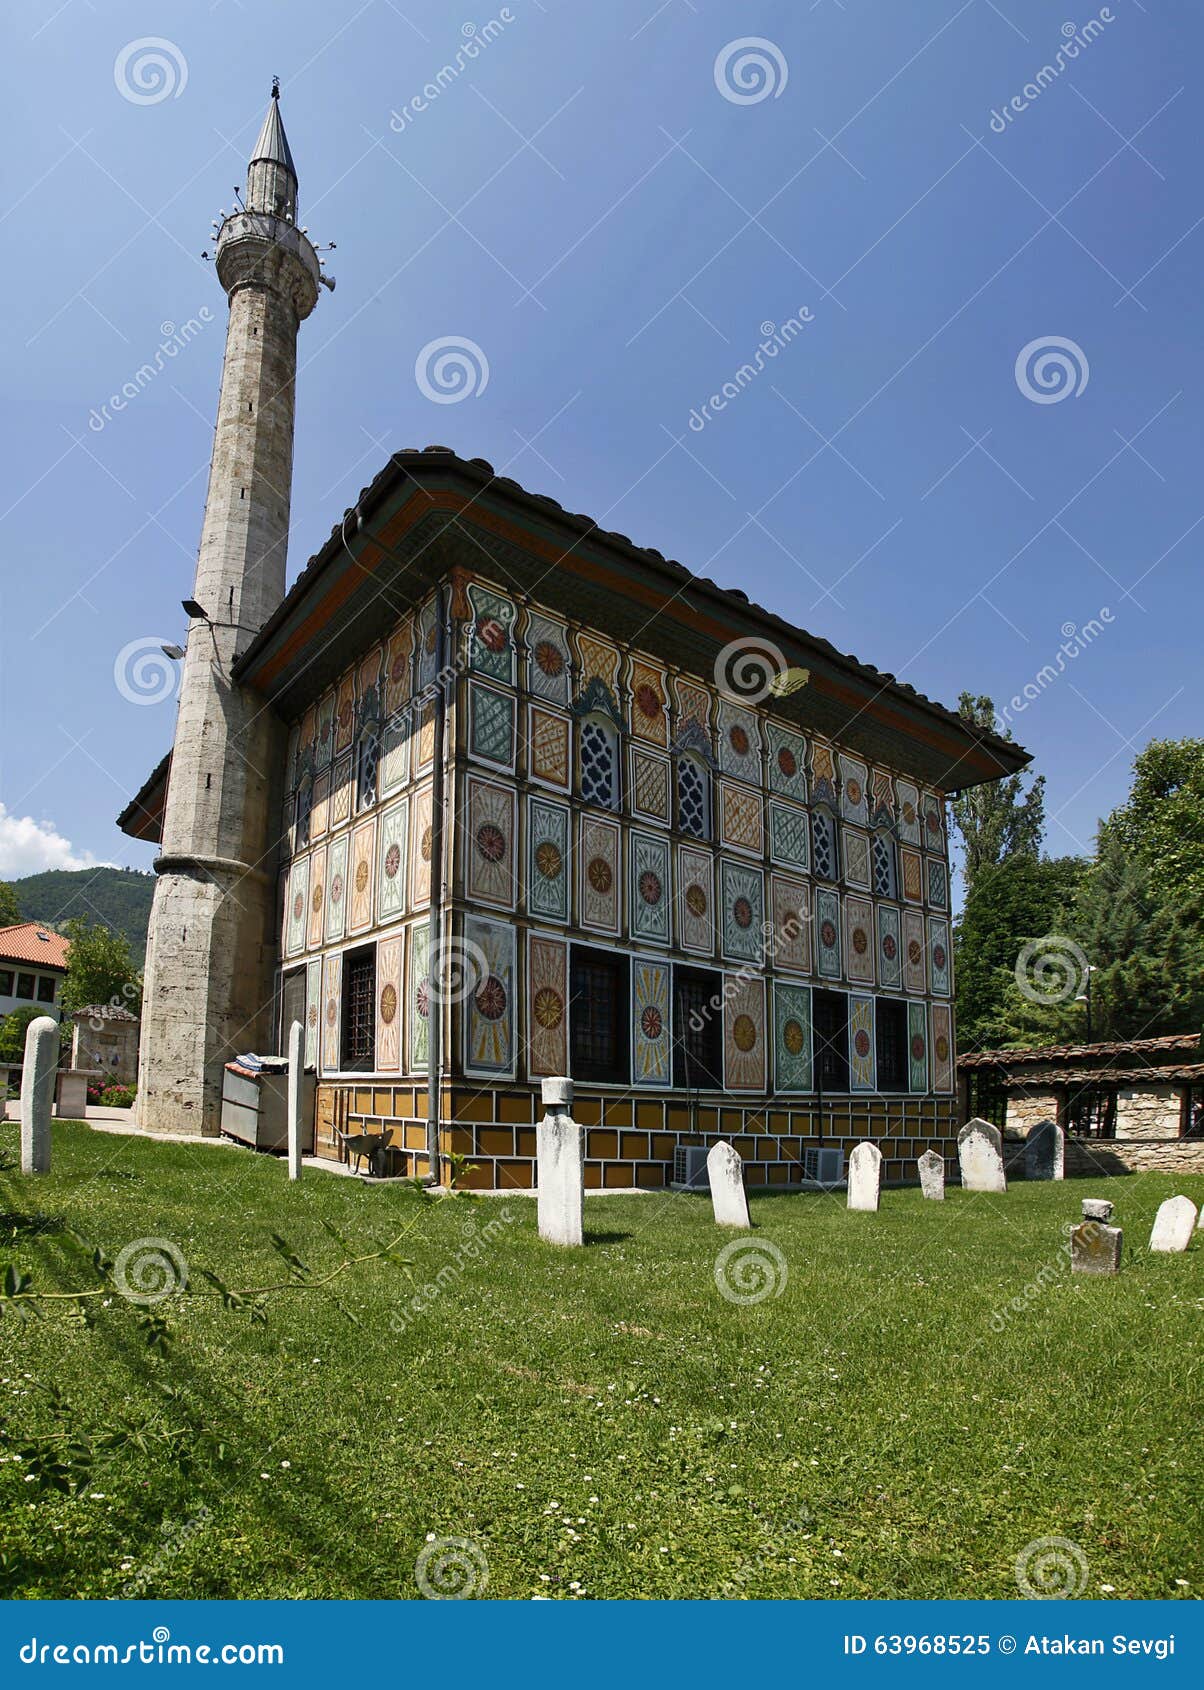 aladza mosque (painted), tetovo, macedonia, balkans